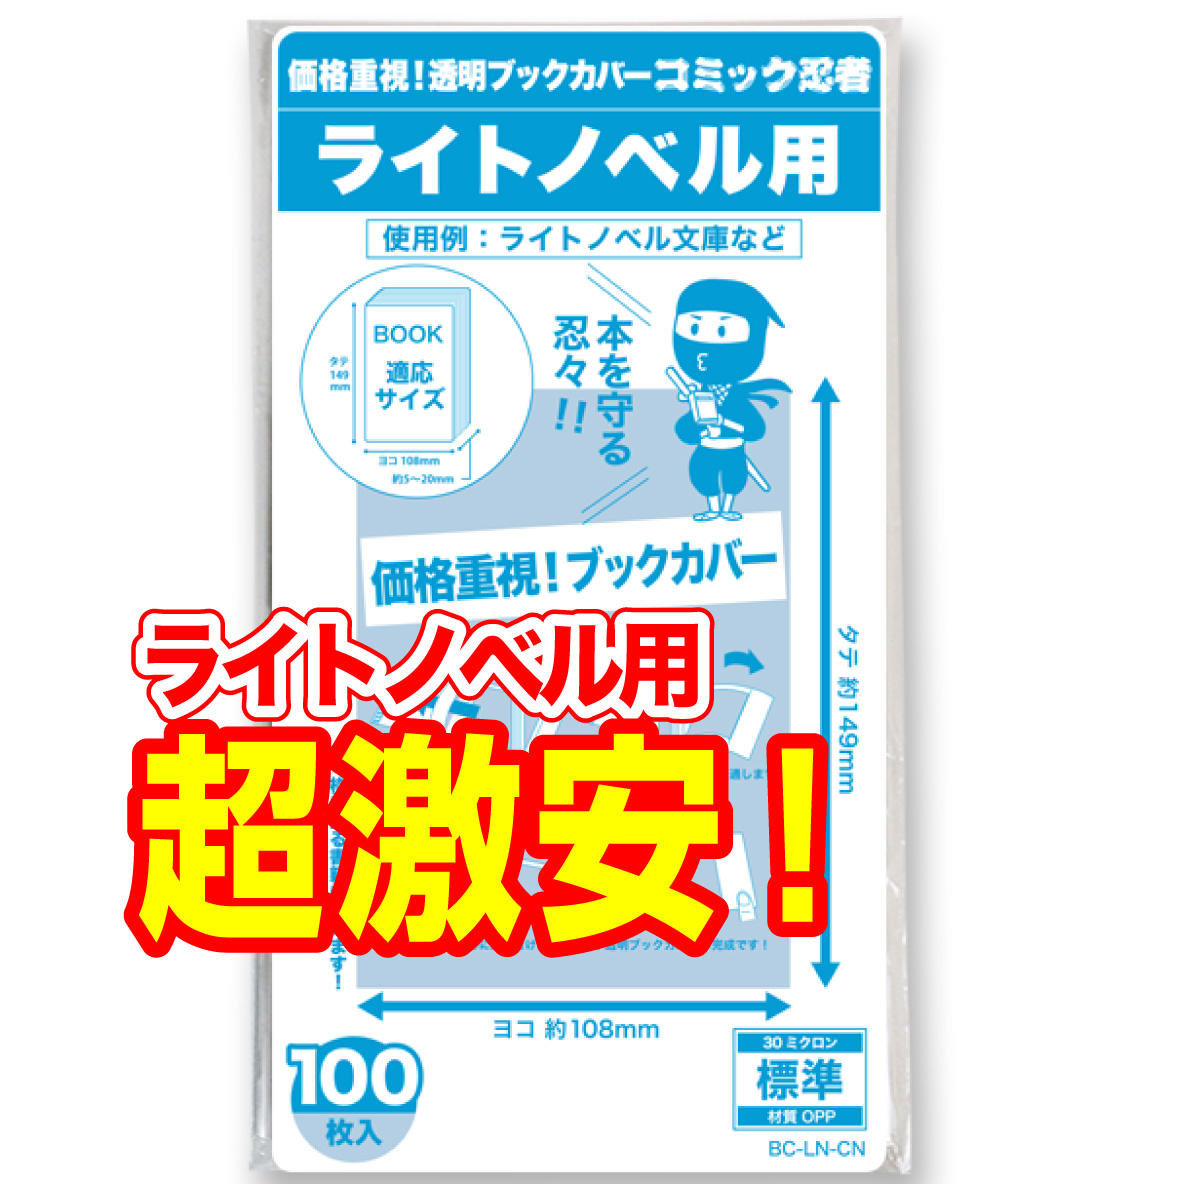 【メーカー公式ショップ】 透明 ブックカバー ライトノベル 100枚